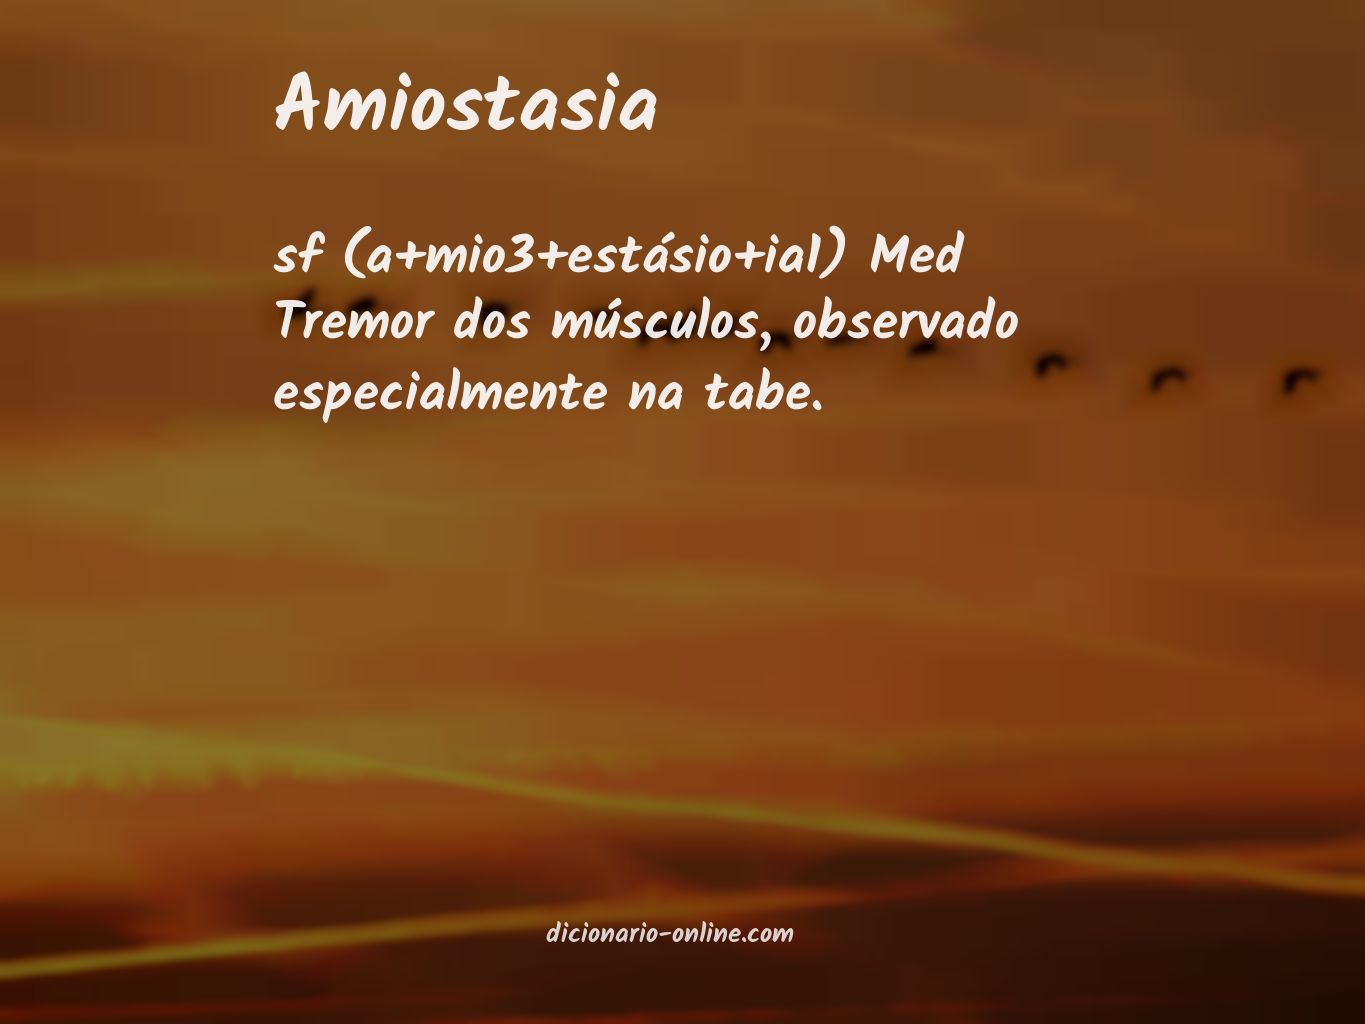 Significado de amiostasia